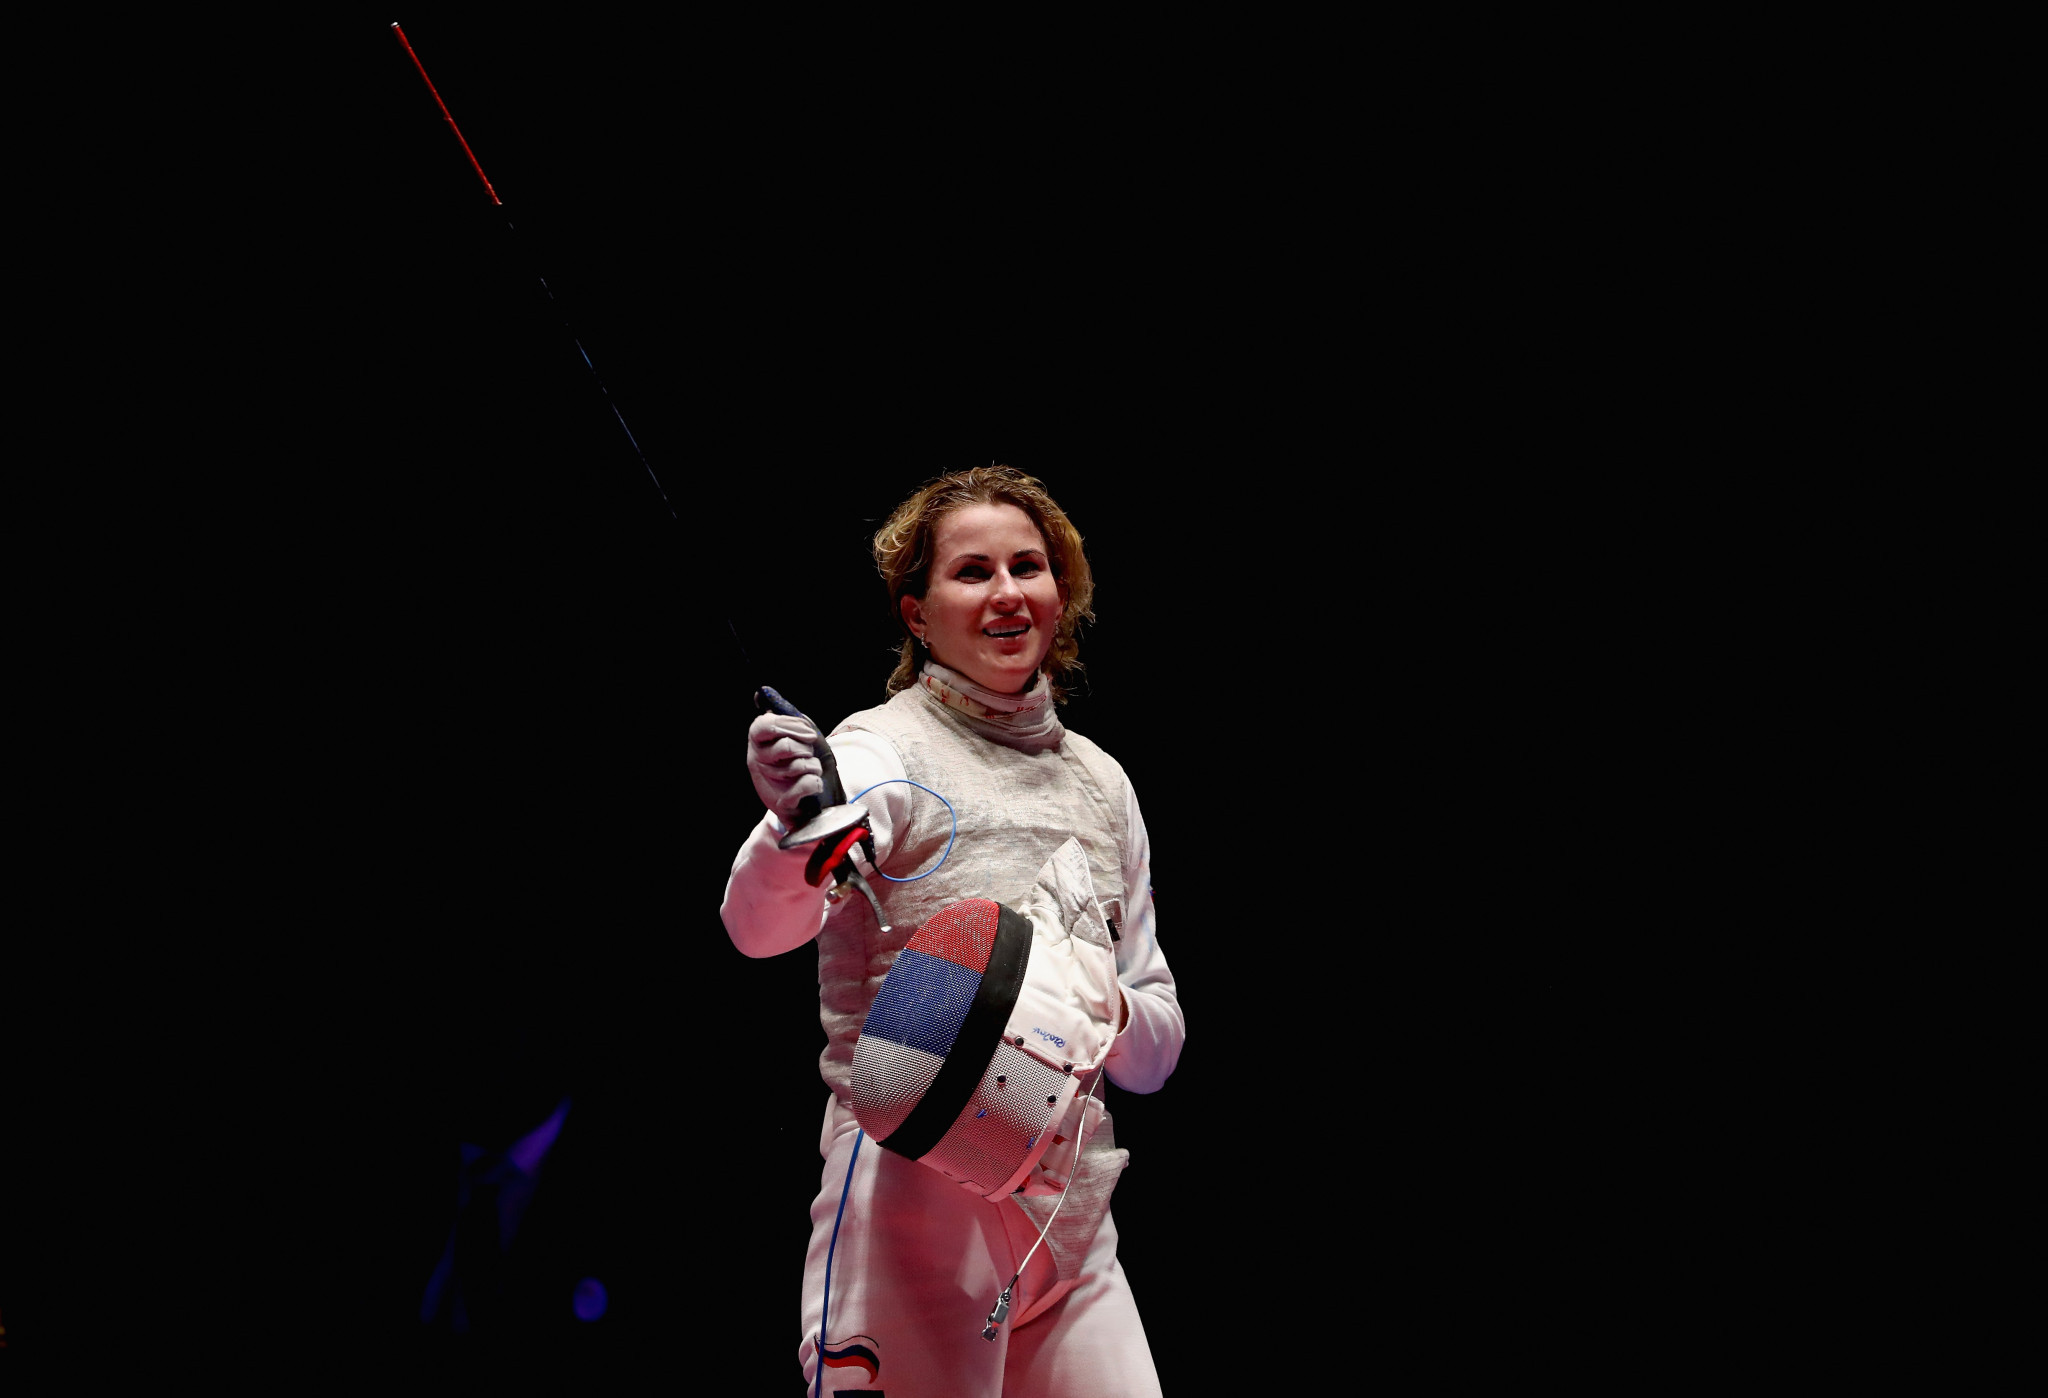 Inna Deriglazova won the women's title in Shanghai ©Getty Images